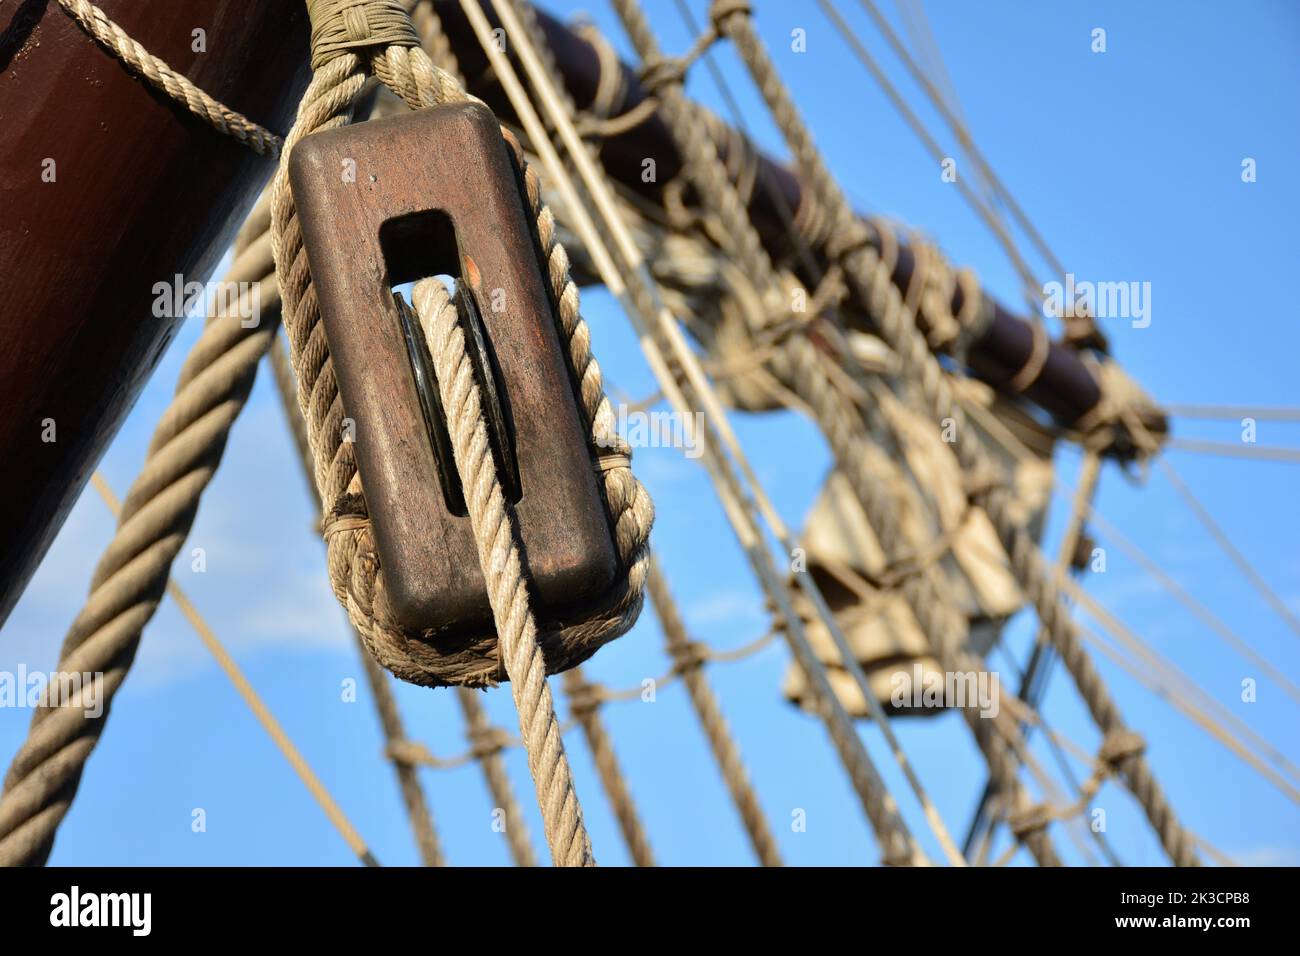 Detalles de poleas y aparejos de un antiguo barco de vela Stock Photo